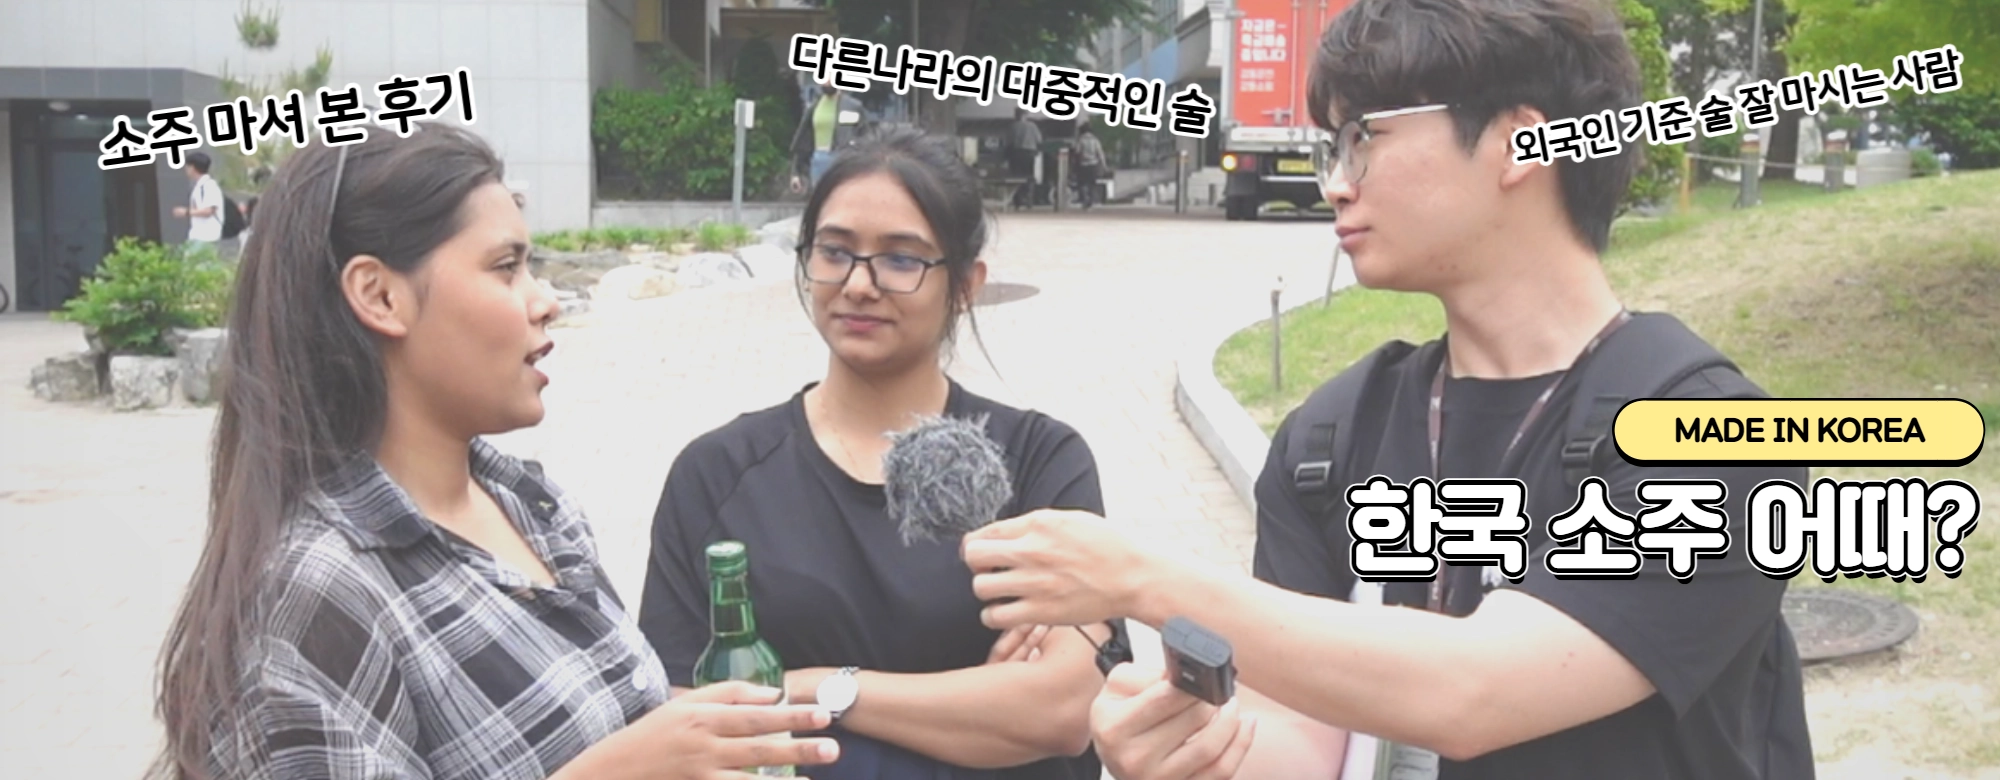 [영상]Made In Korea<3> “서민의 술 K-소주 어땠어?” 